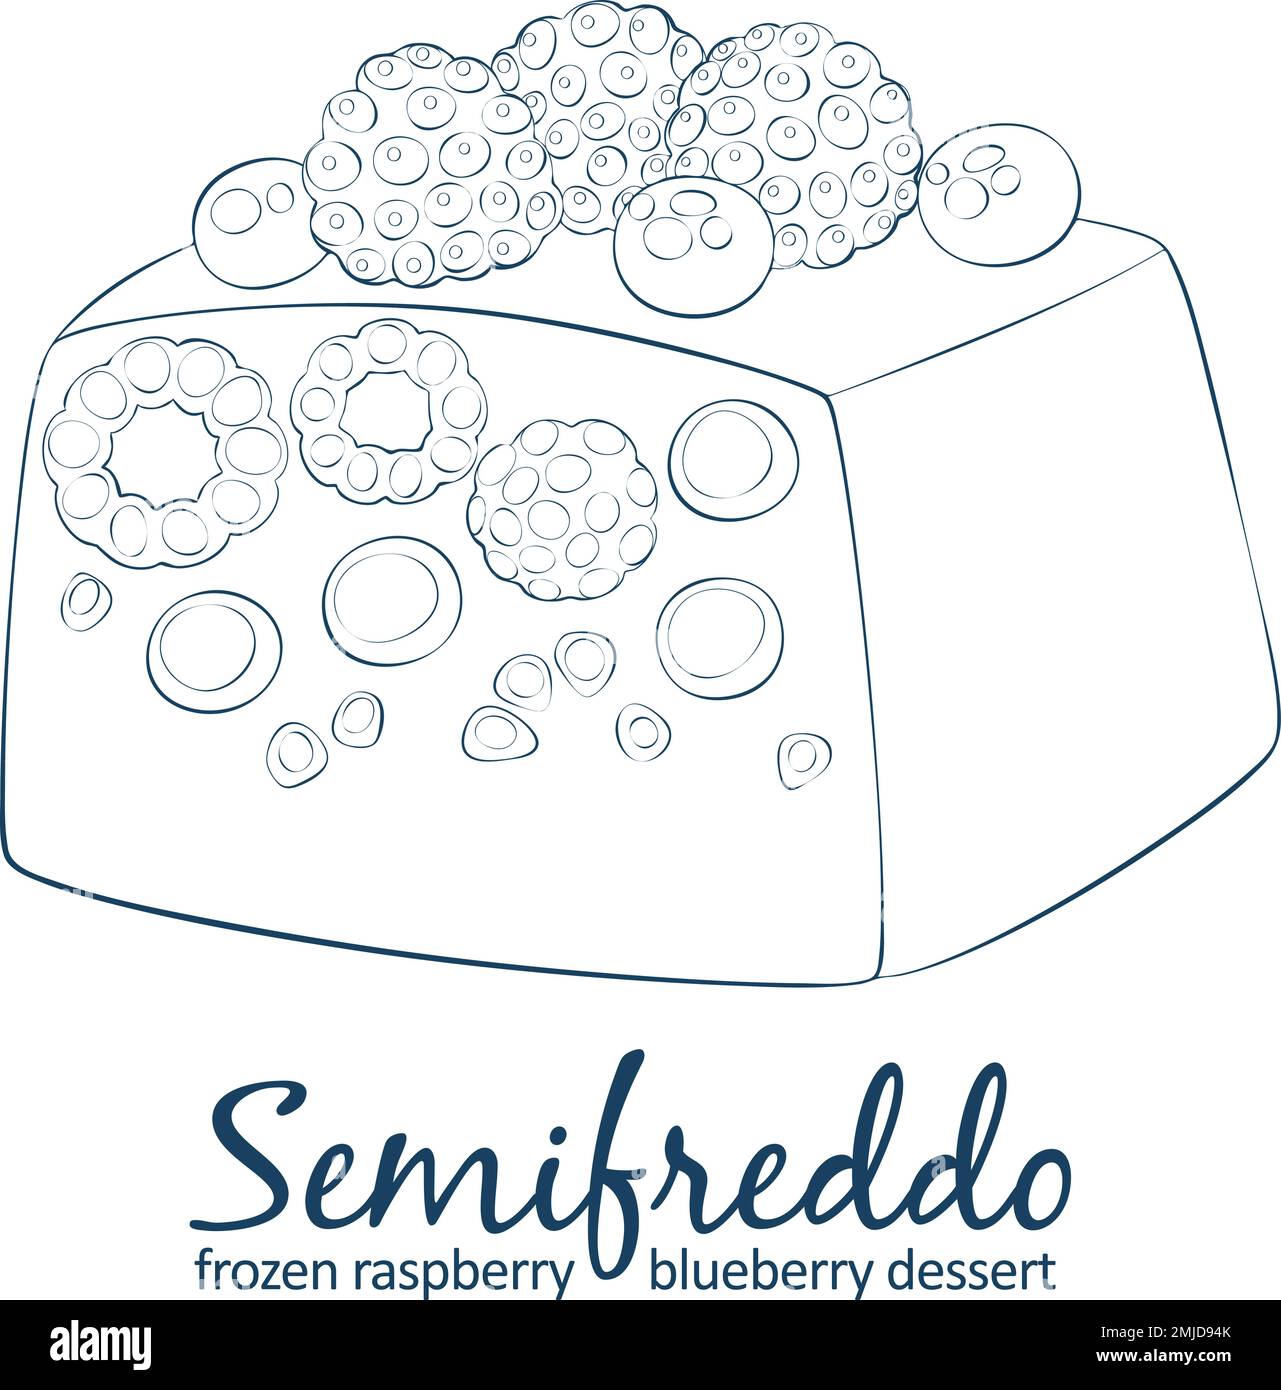 Semifreddo-Symbol für gemischte Beeren, Cartoon-Vektor, von Hand gezeichnet, schwarz-weiß Stock Vektor